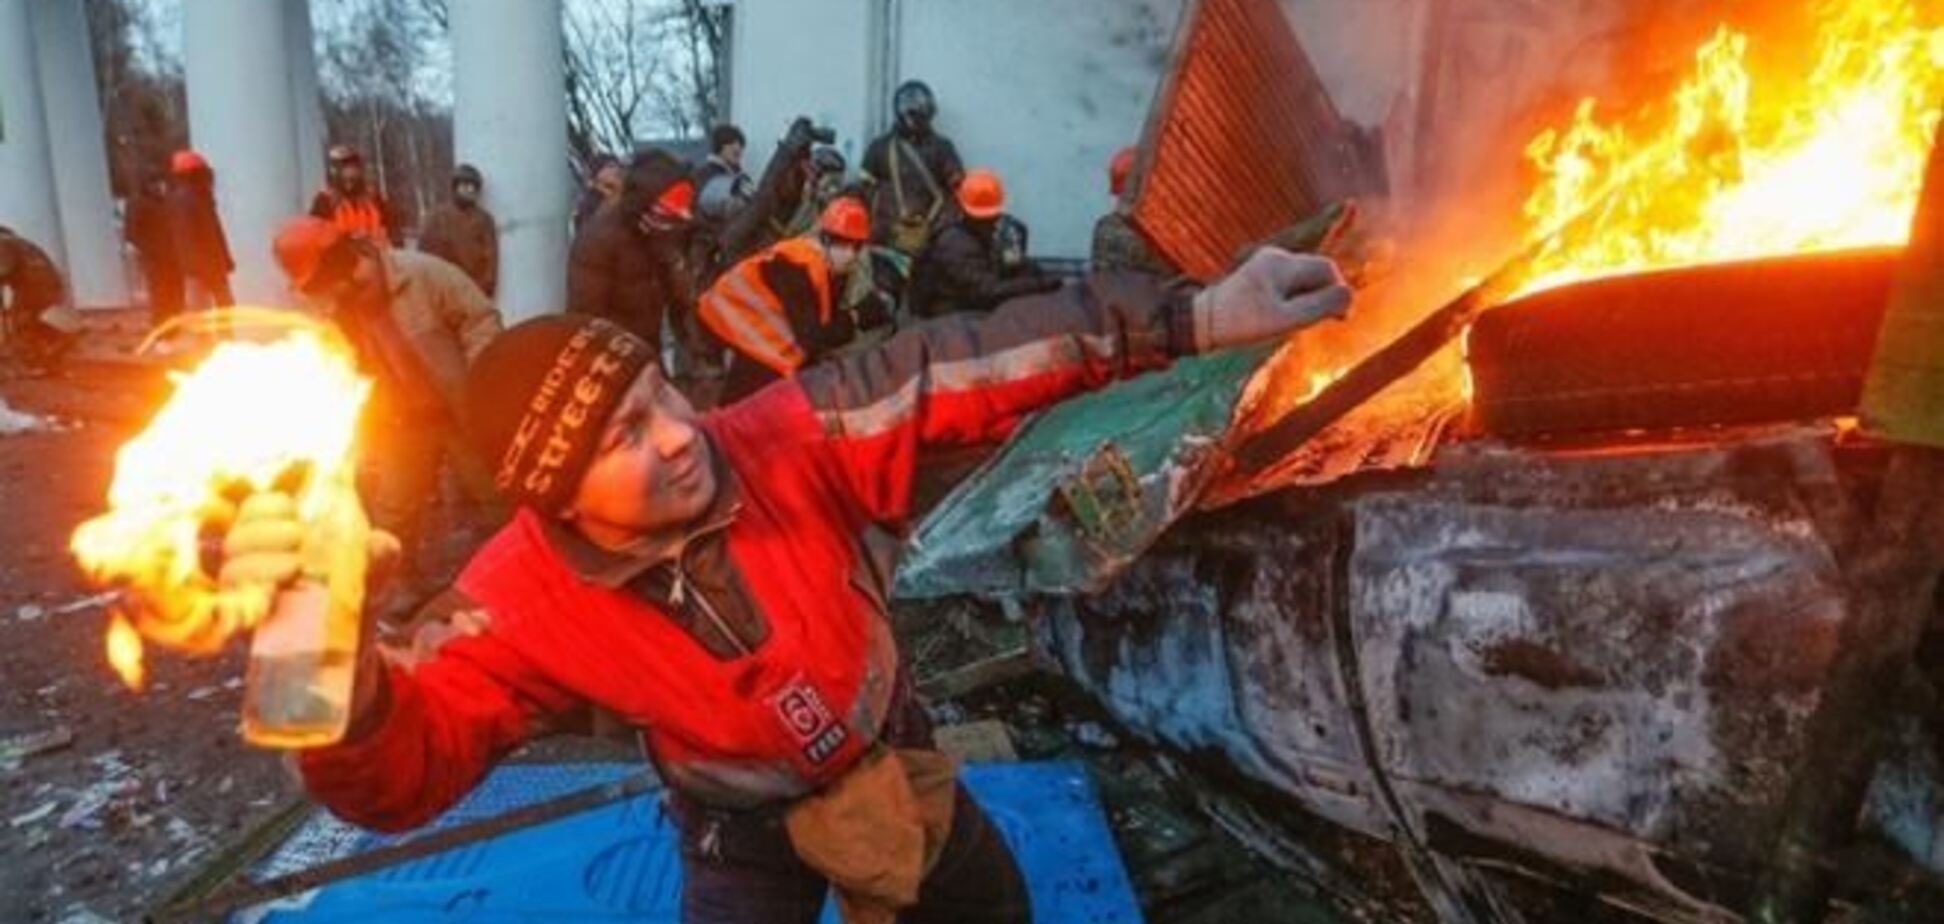 Олланд: в ближайшие дни насилие в Украине может возобновиться